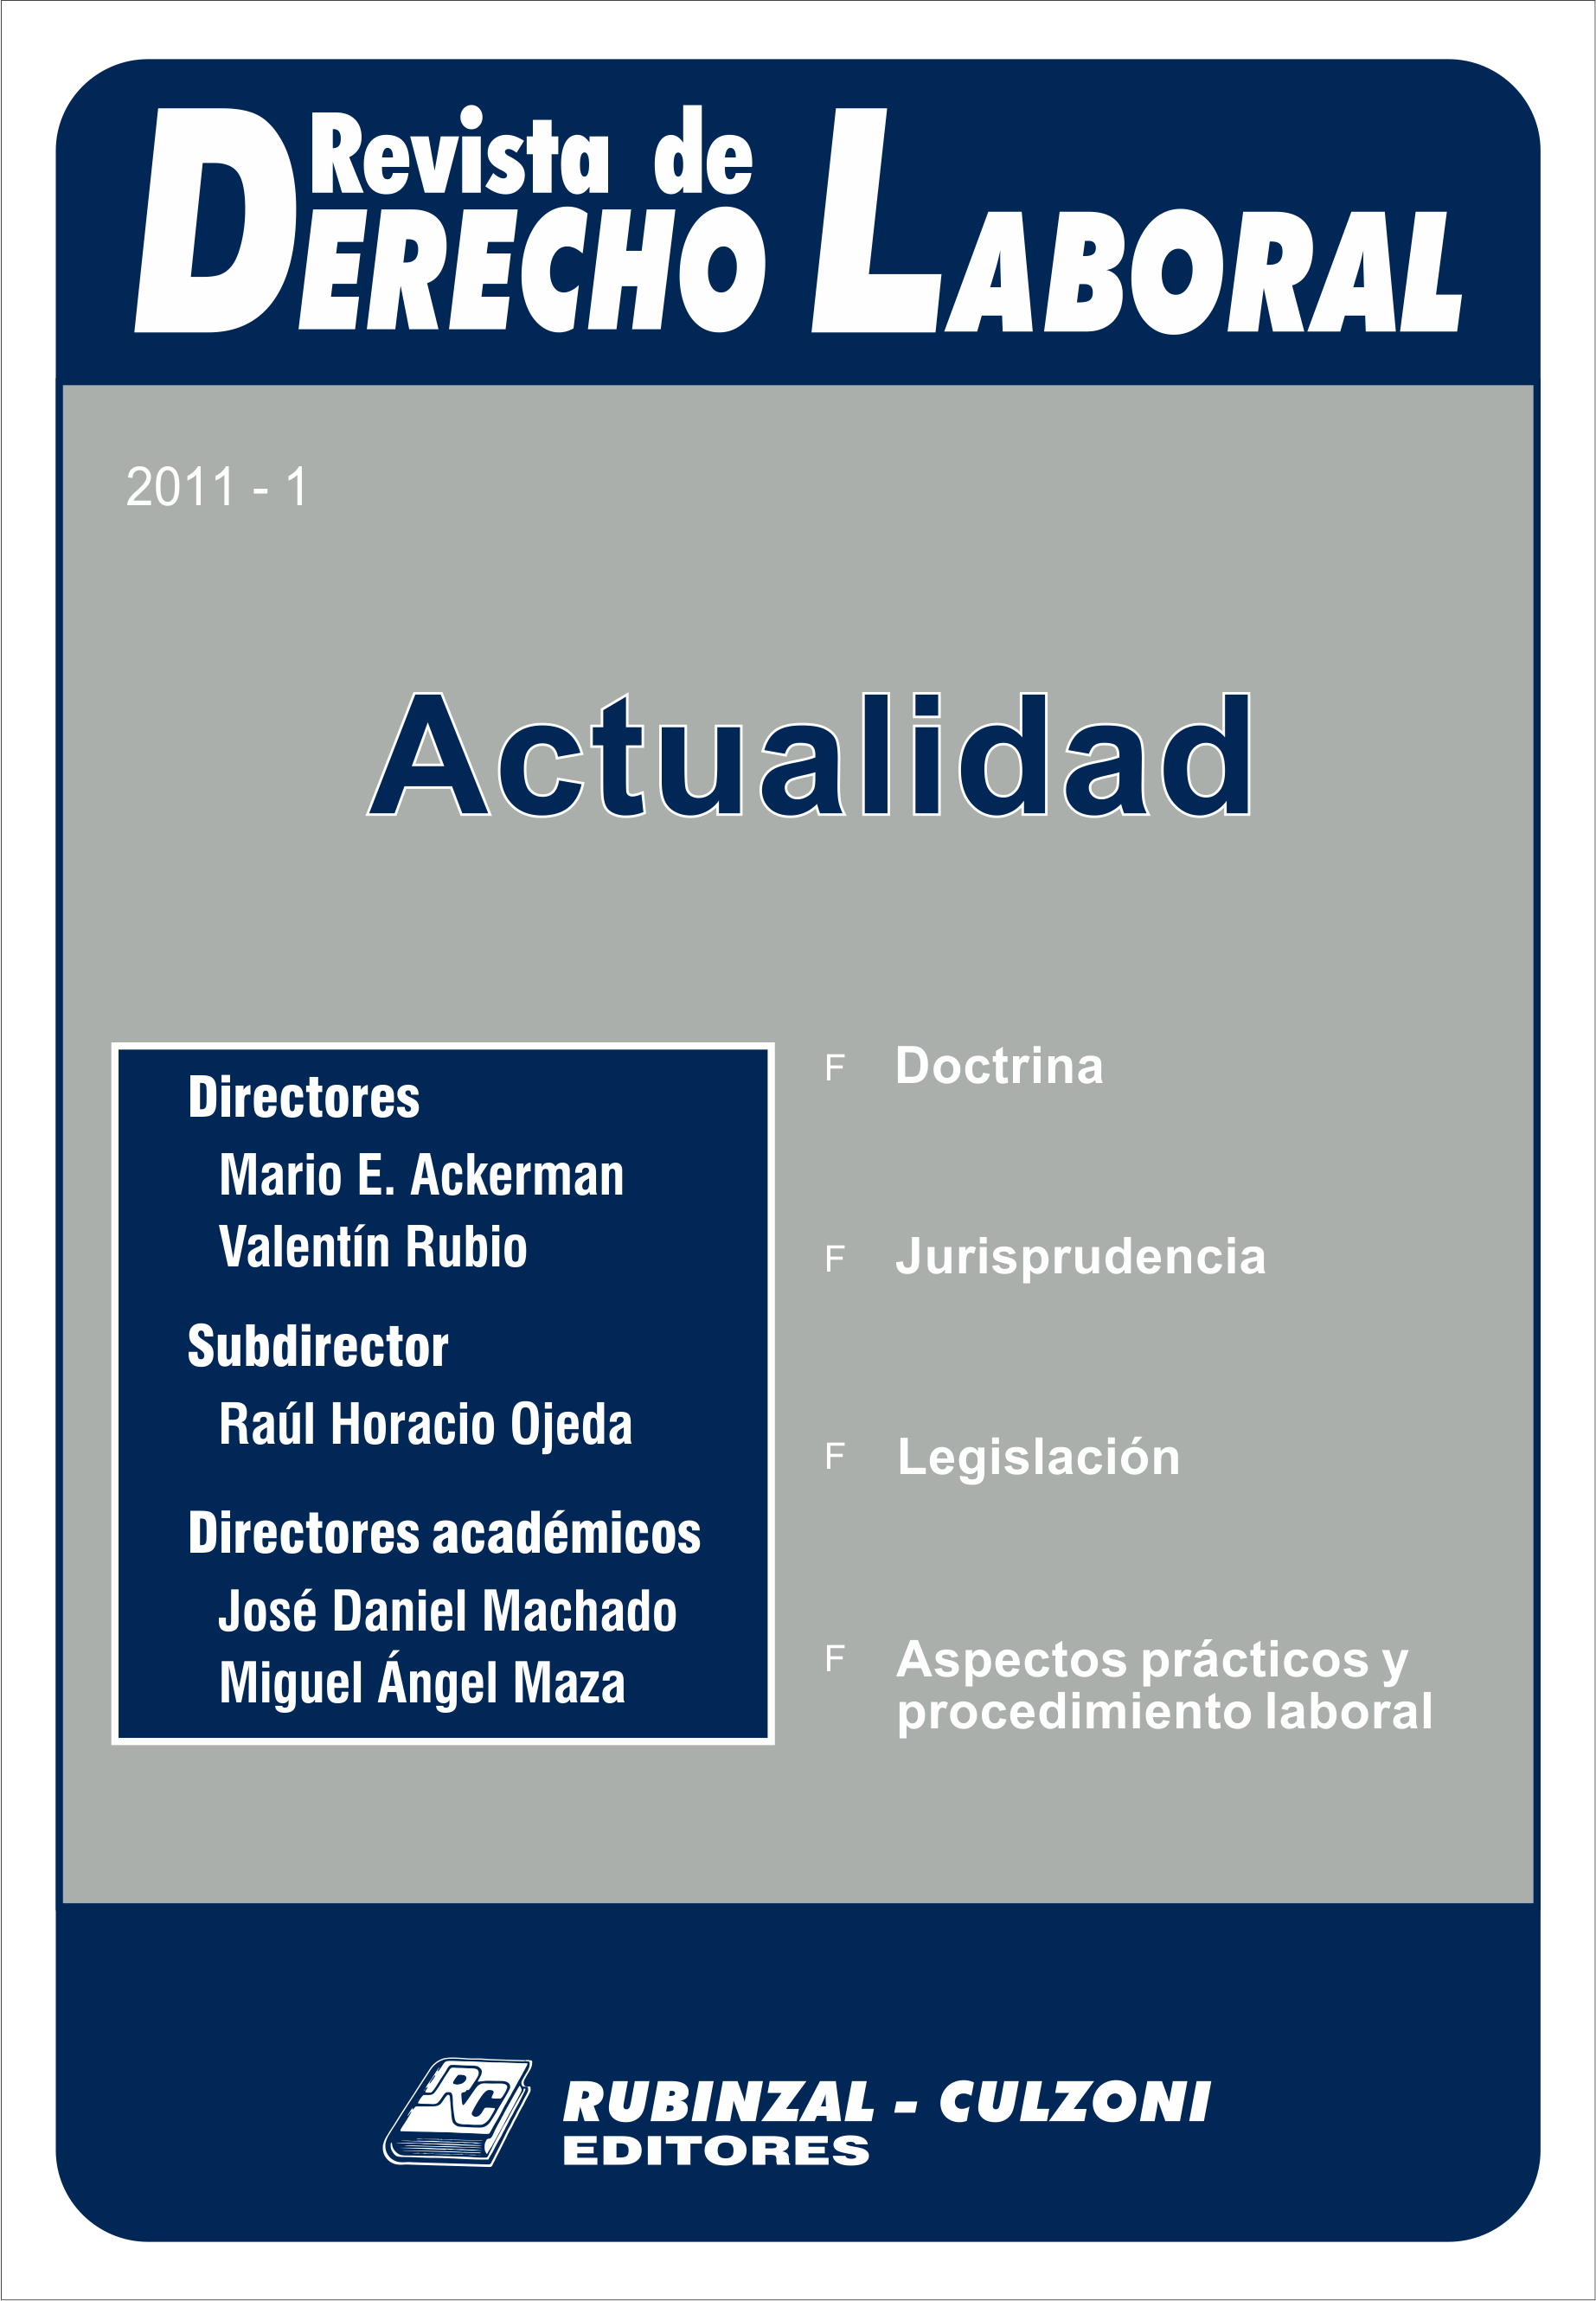  Actualidad - Año 2011 - 1. [2011-1]